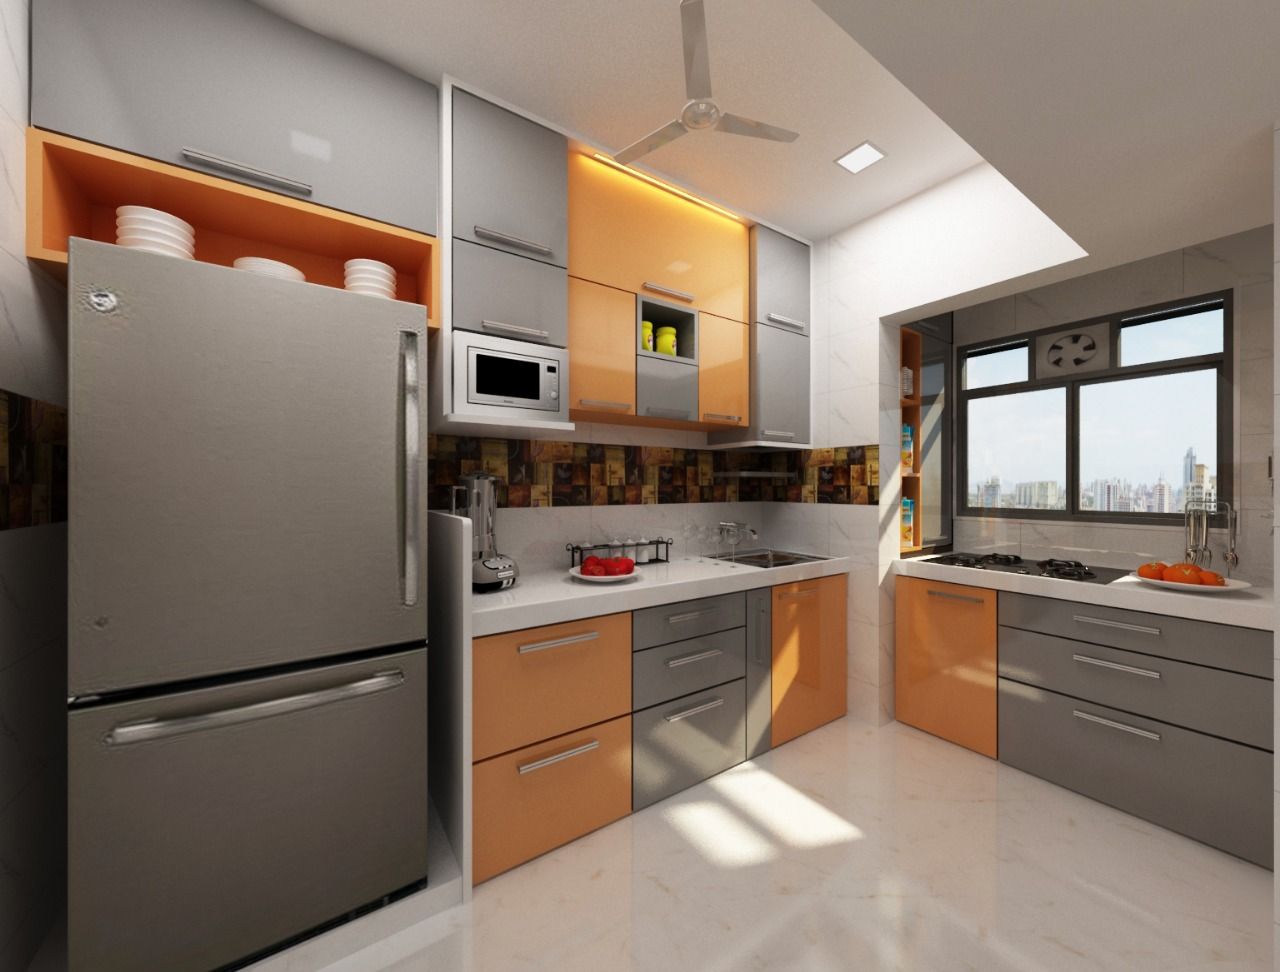 3BHK home design in Ghansoli, Mumbai , Square 4 Design & Build Square 4 Design & Build ห้องครัว